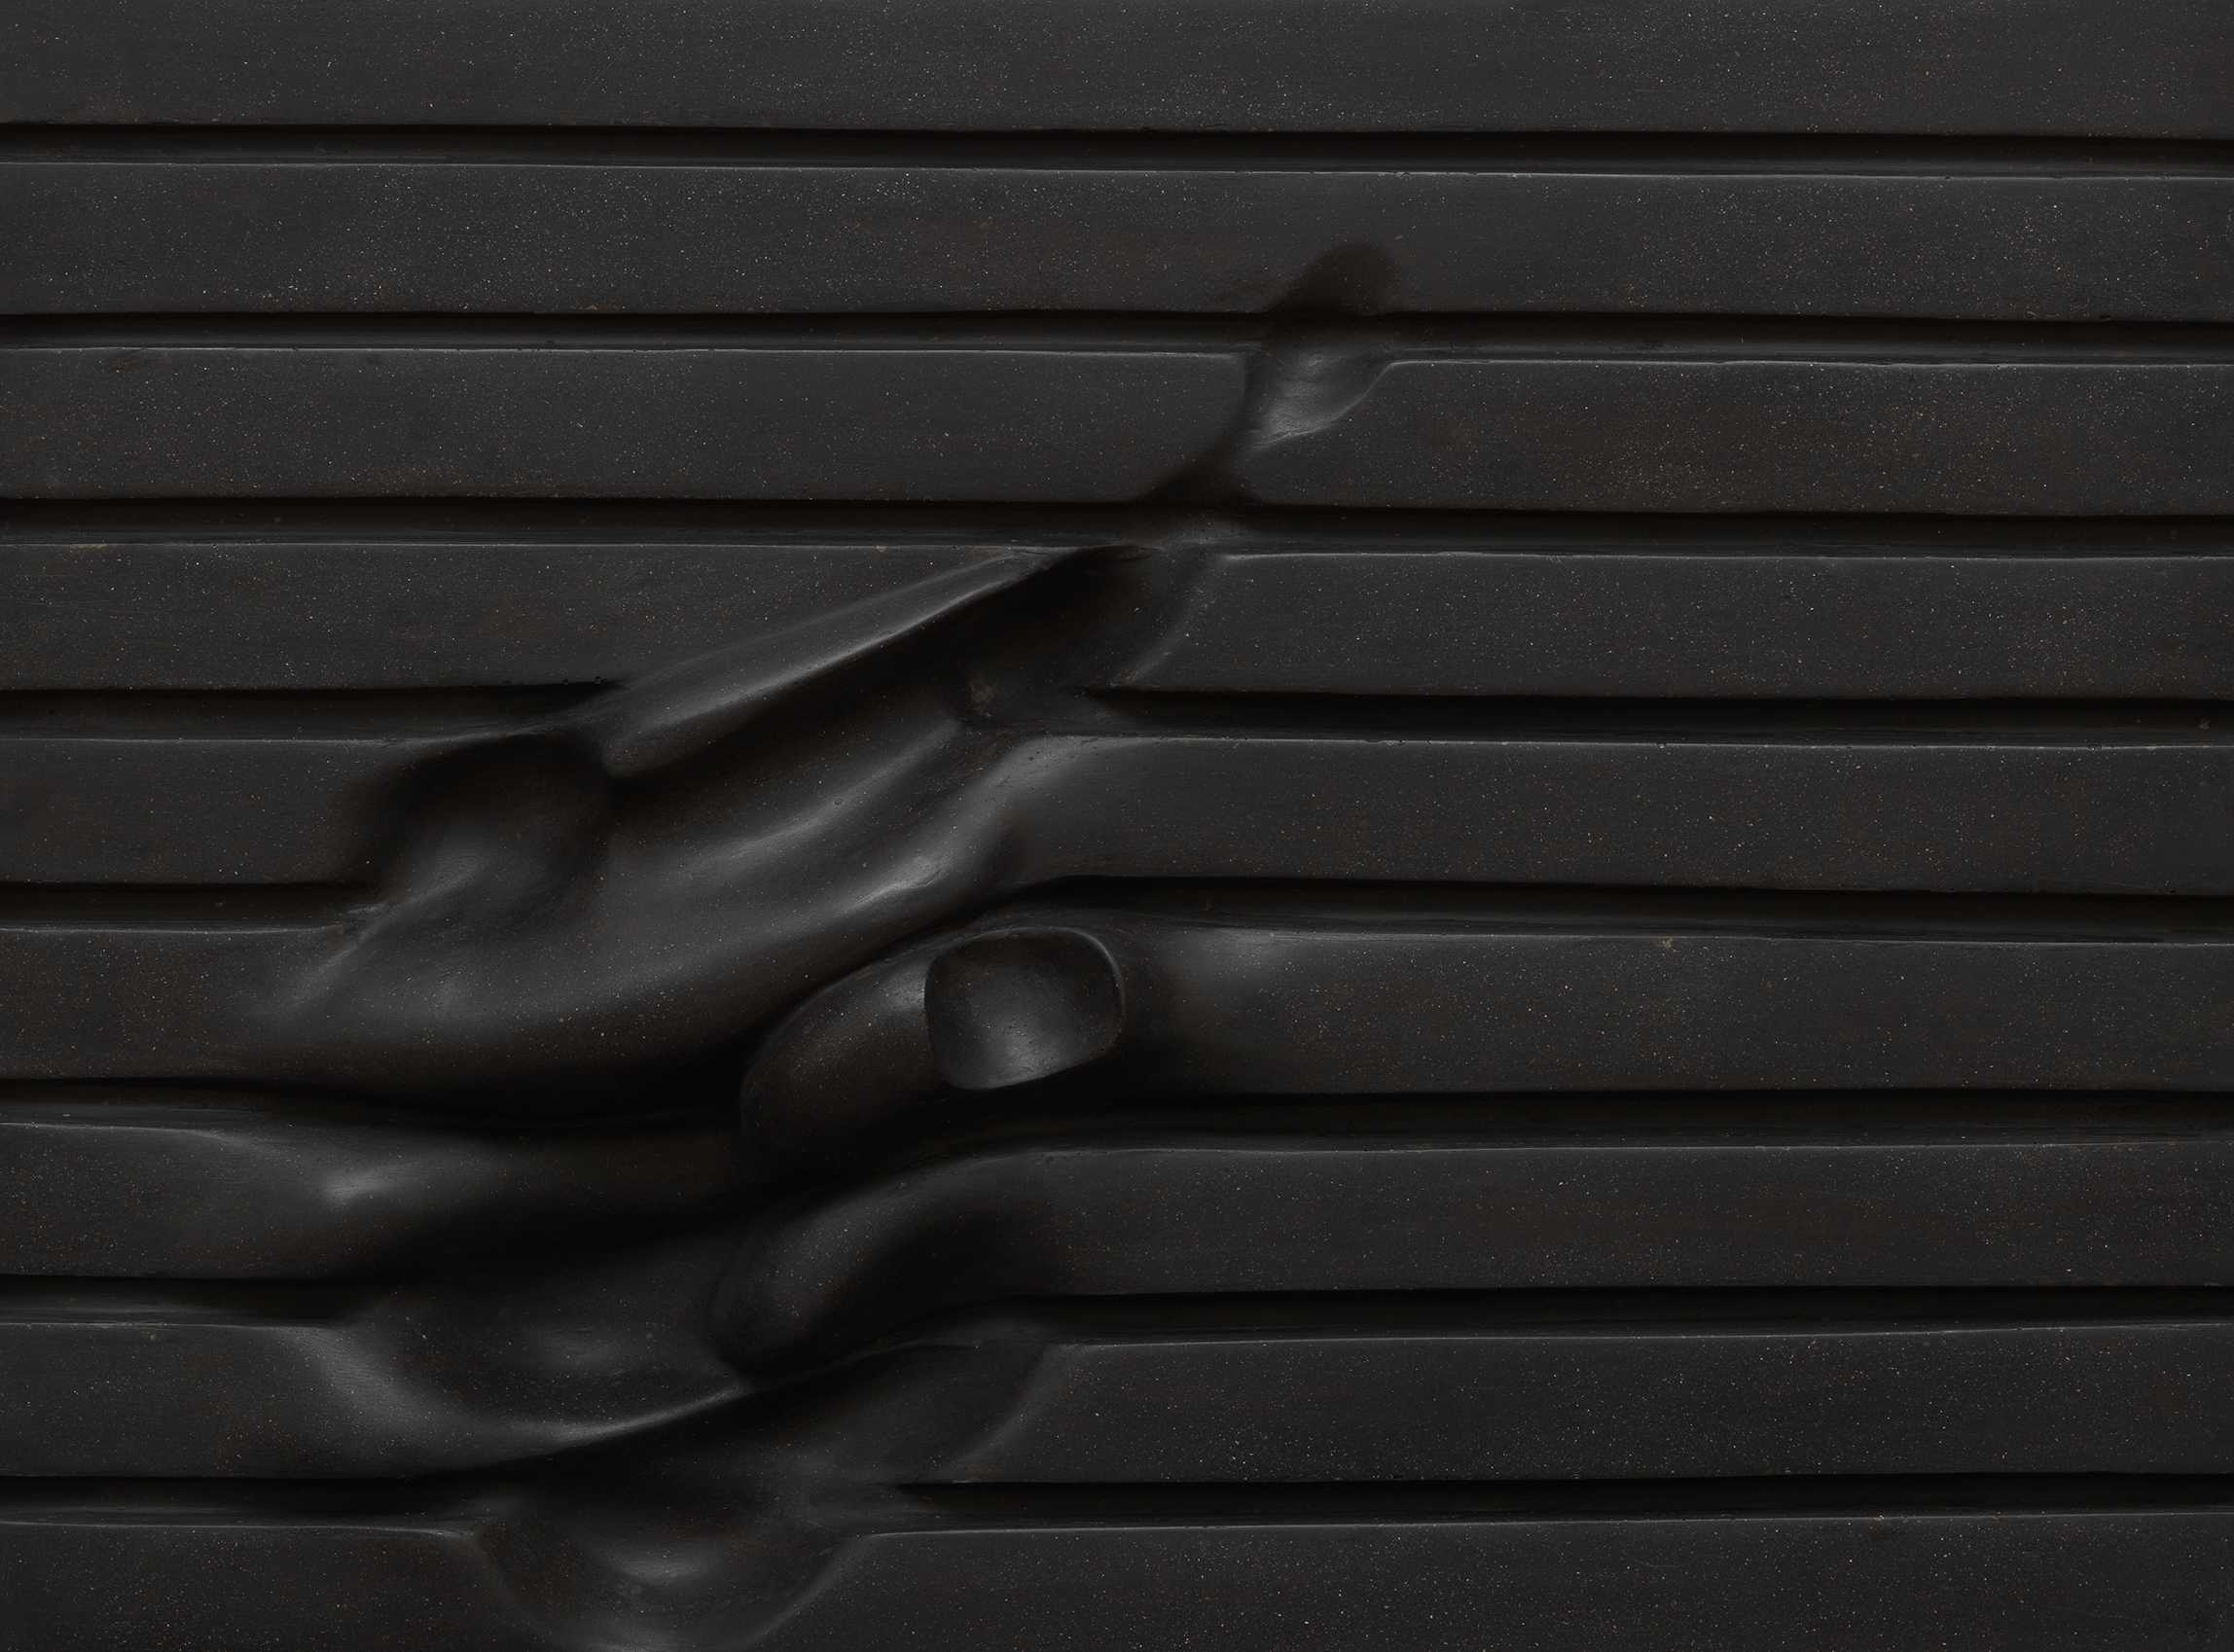 Die Abbildung zeigt das Werk Querfeld des Künstlers Hermann Frauenknecht aus dem Jahr 1982. Es besteht aus einer schwarzen Schaumstoffplatte mit horizontalen Rillen, in die durch Wärmeeinwirkung organisch anmutende Vertiefungen eingedrückt wurden. Die Fotoaufnahme stammt von Annette Kradisch.